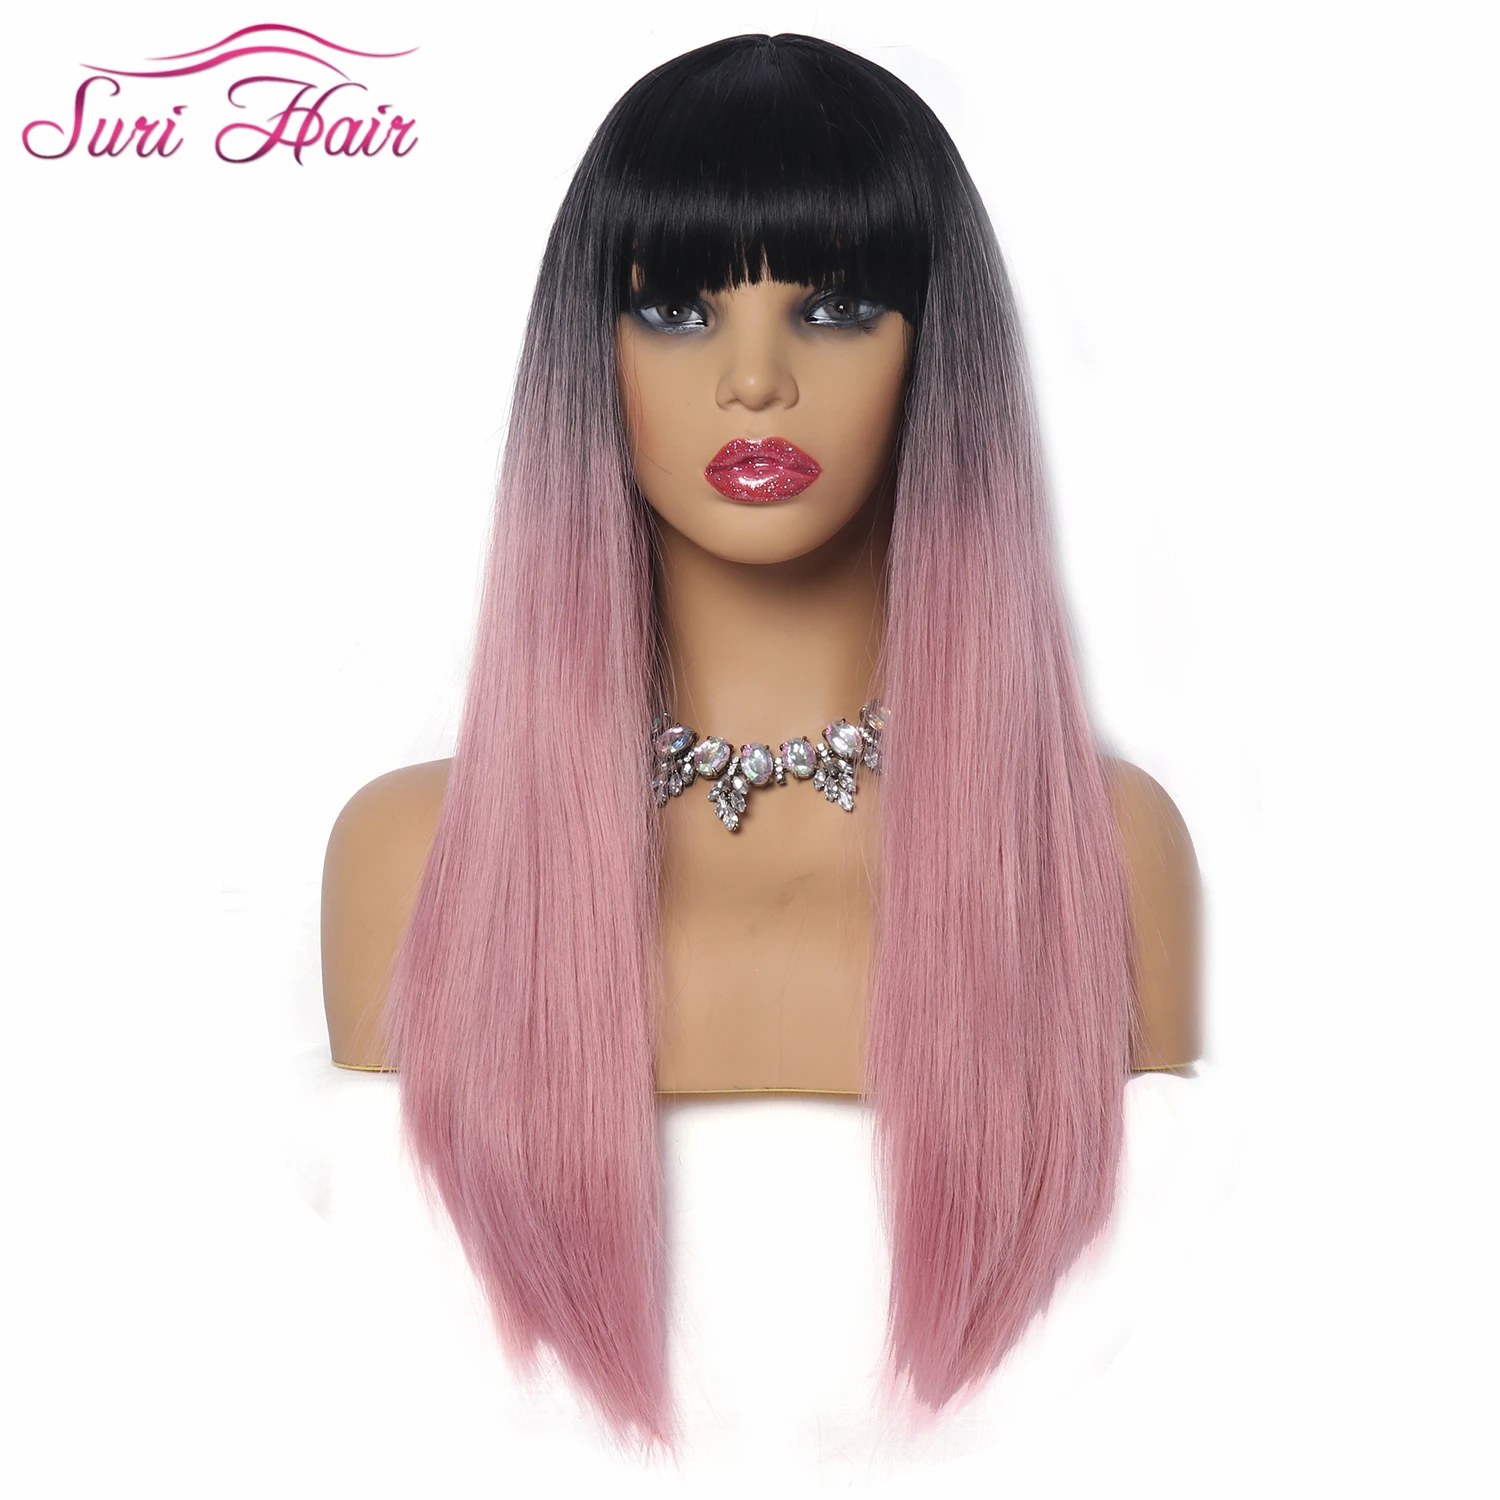 Suri волосы 26 ''длинные прямые синтетические парики для черных женщин парики с челкой Омбре розовый/зеленый/серый волос 130% плотность